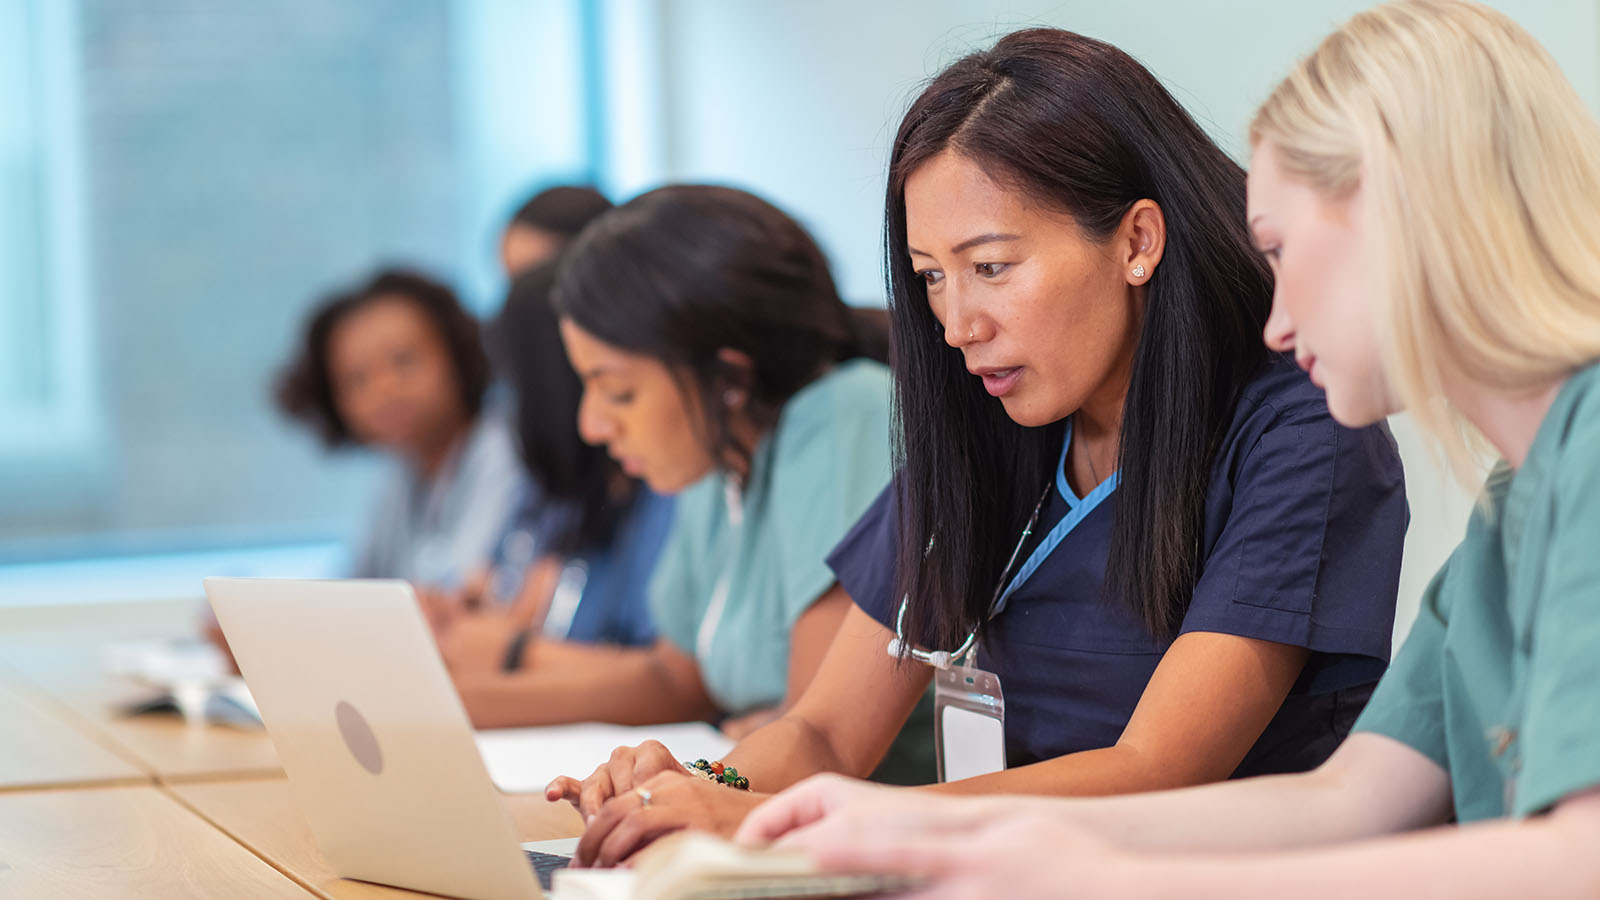 Women nurses working in a classroom on laptops. 